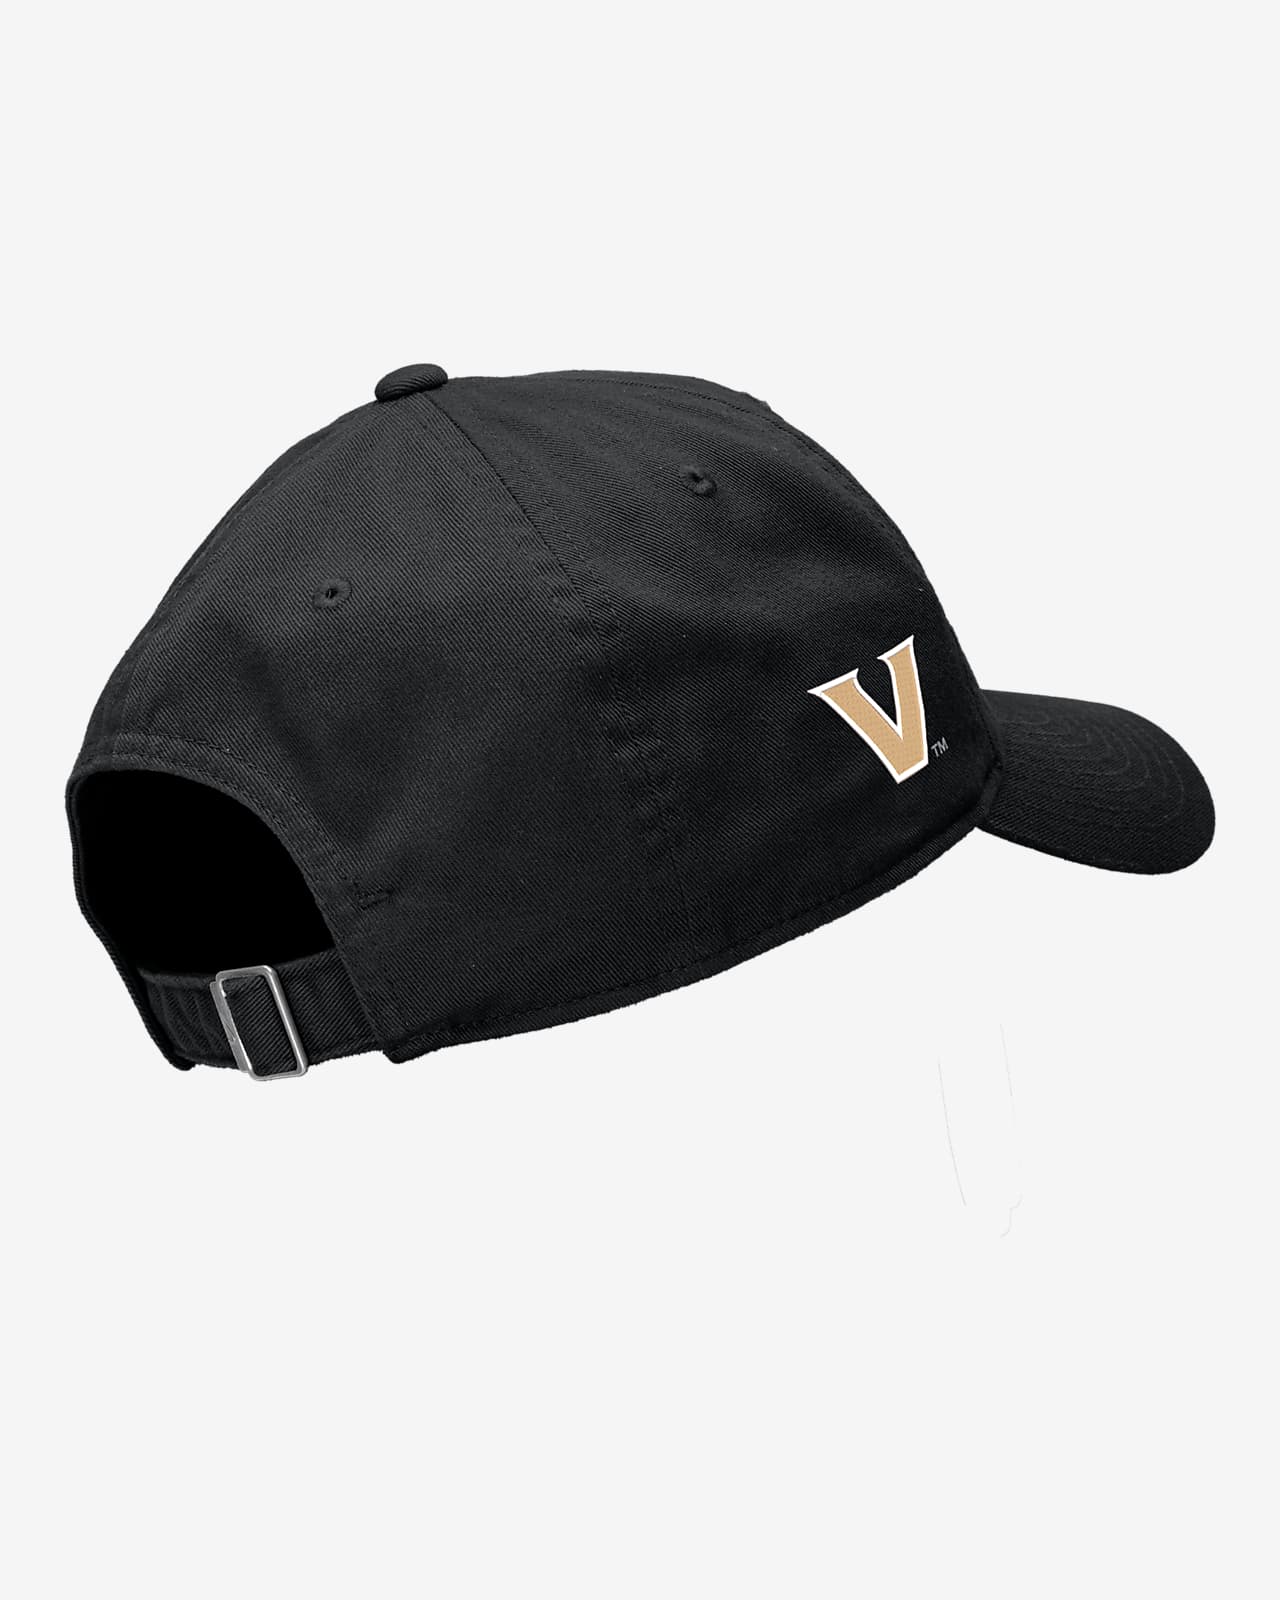 Vanderbilt Nike College Cap.